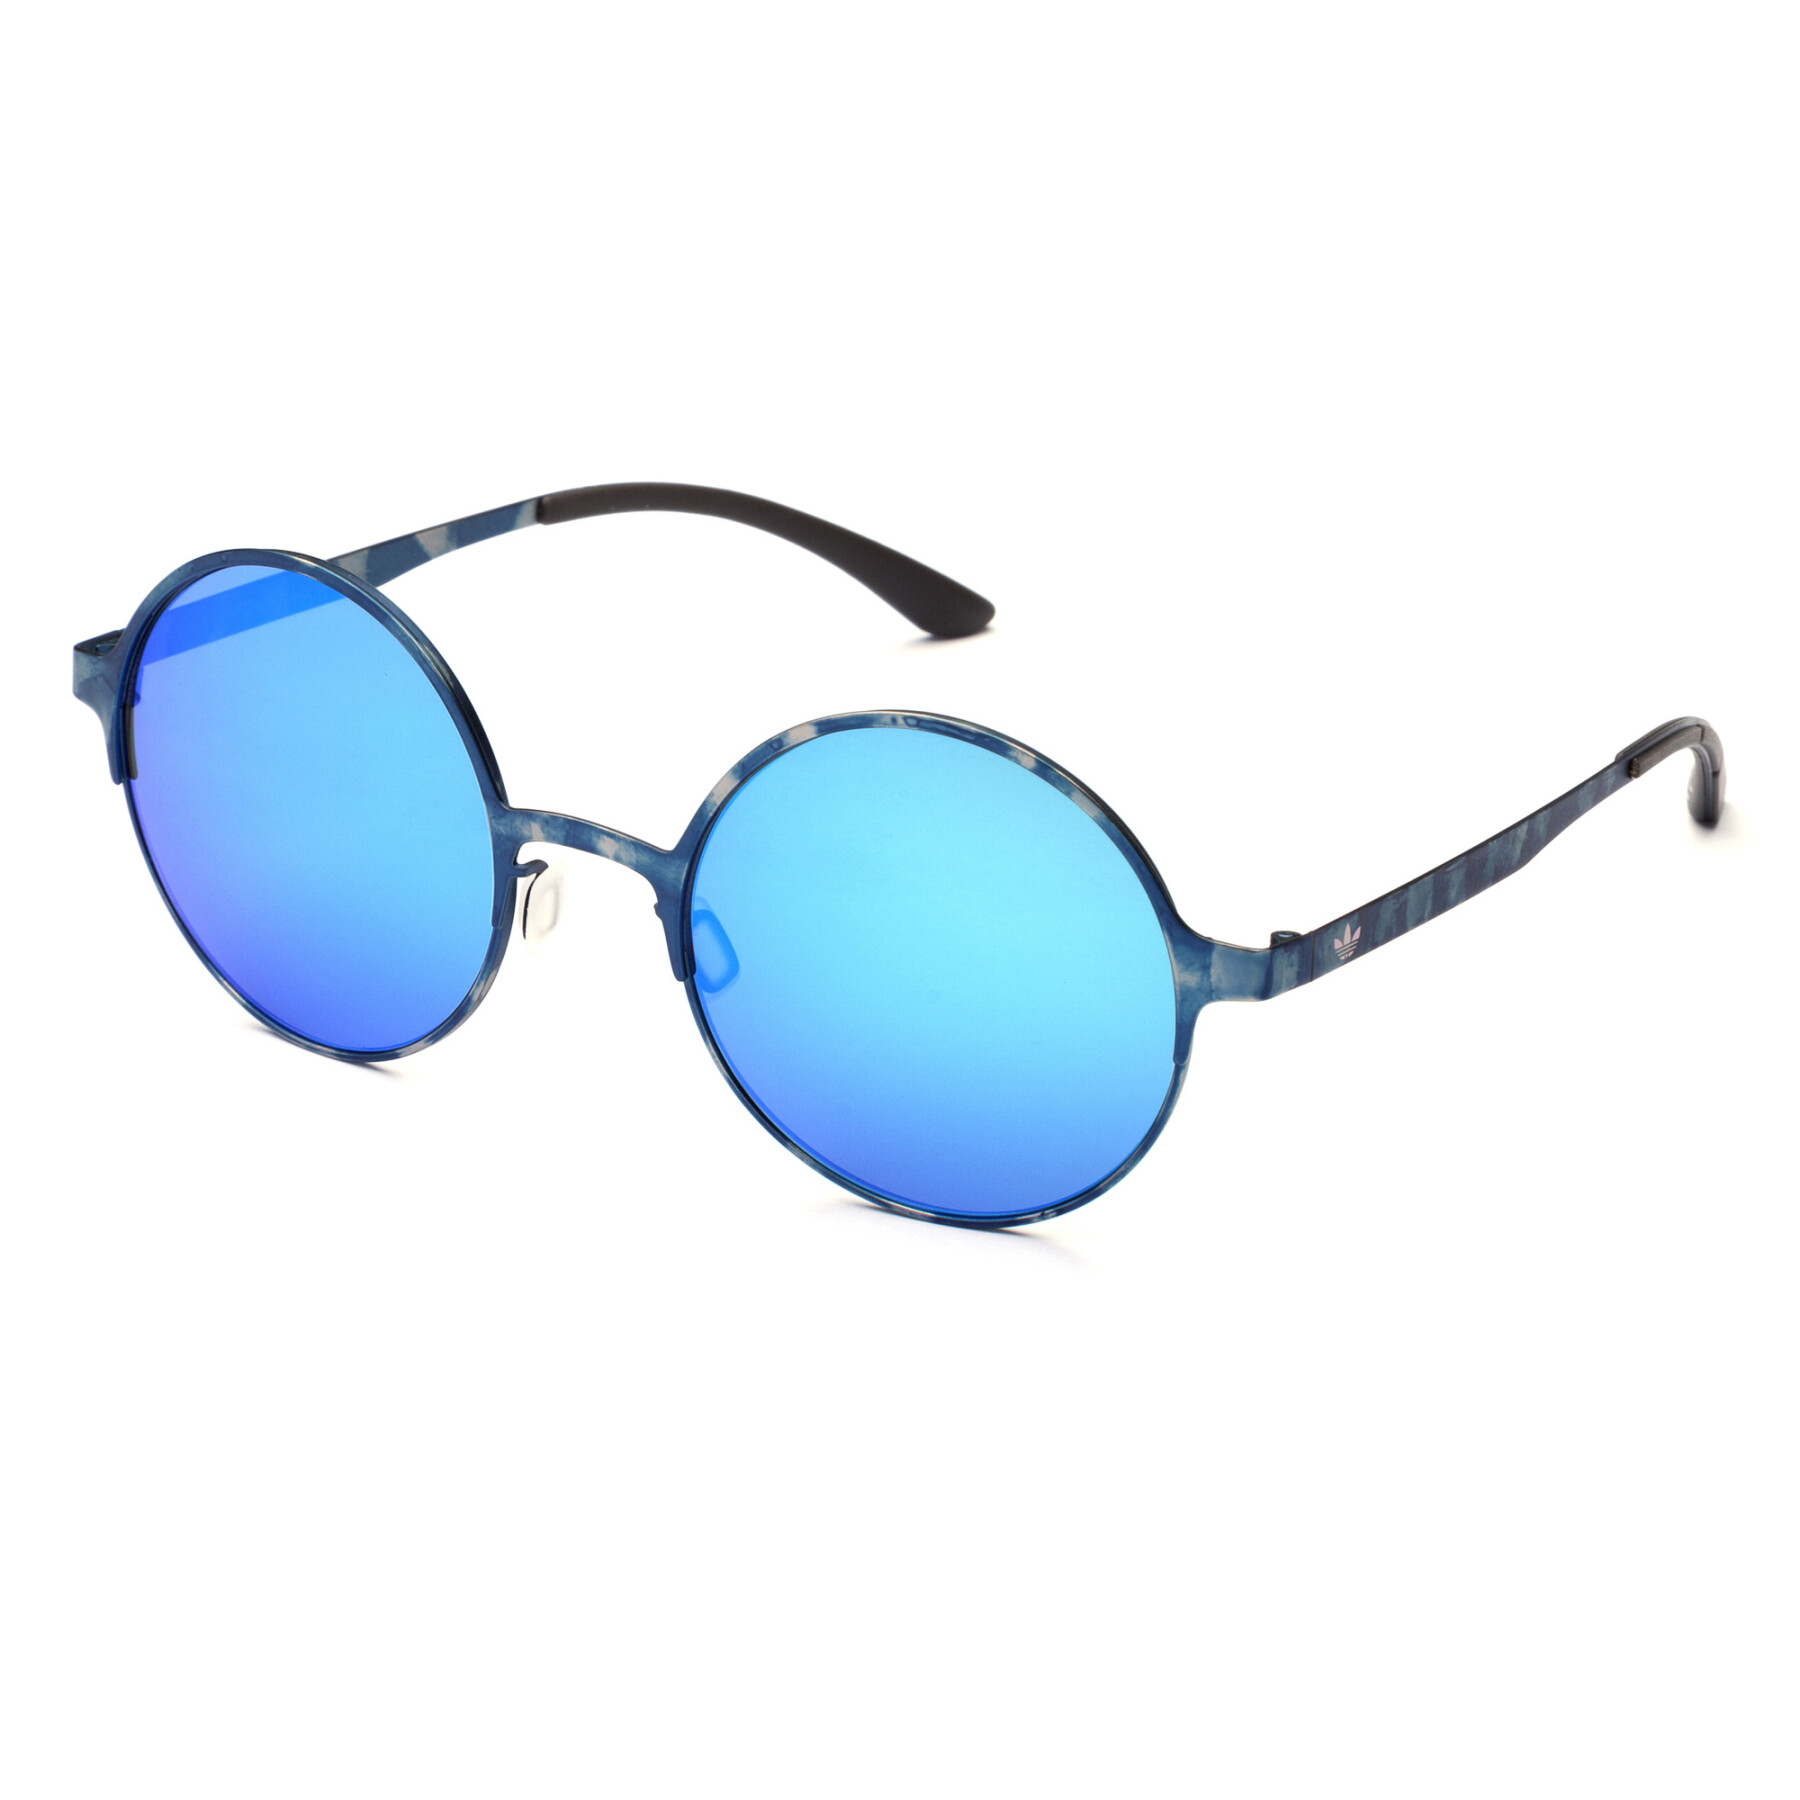 Women's sunglasses adidas AOM004-WHS022